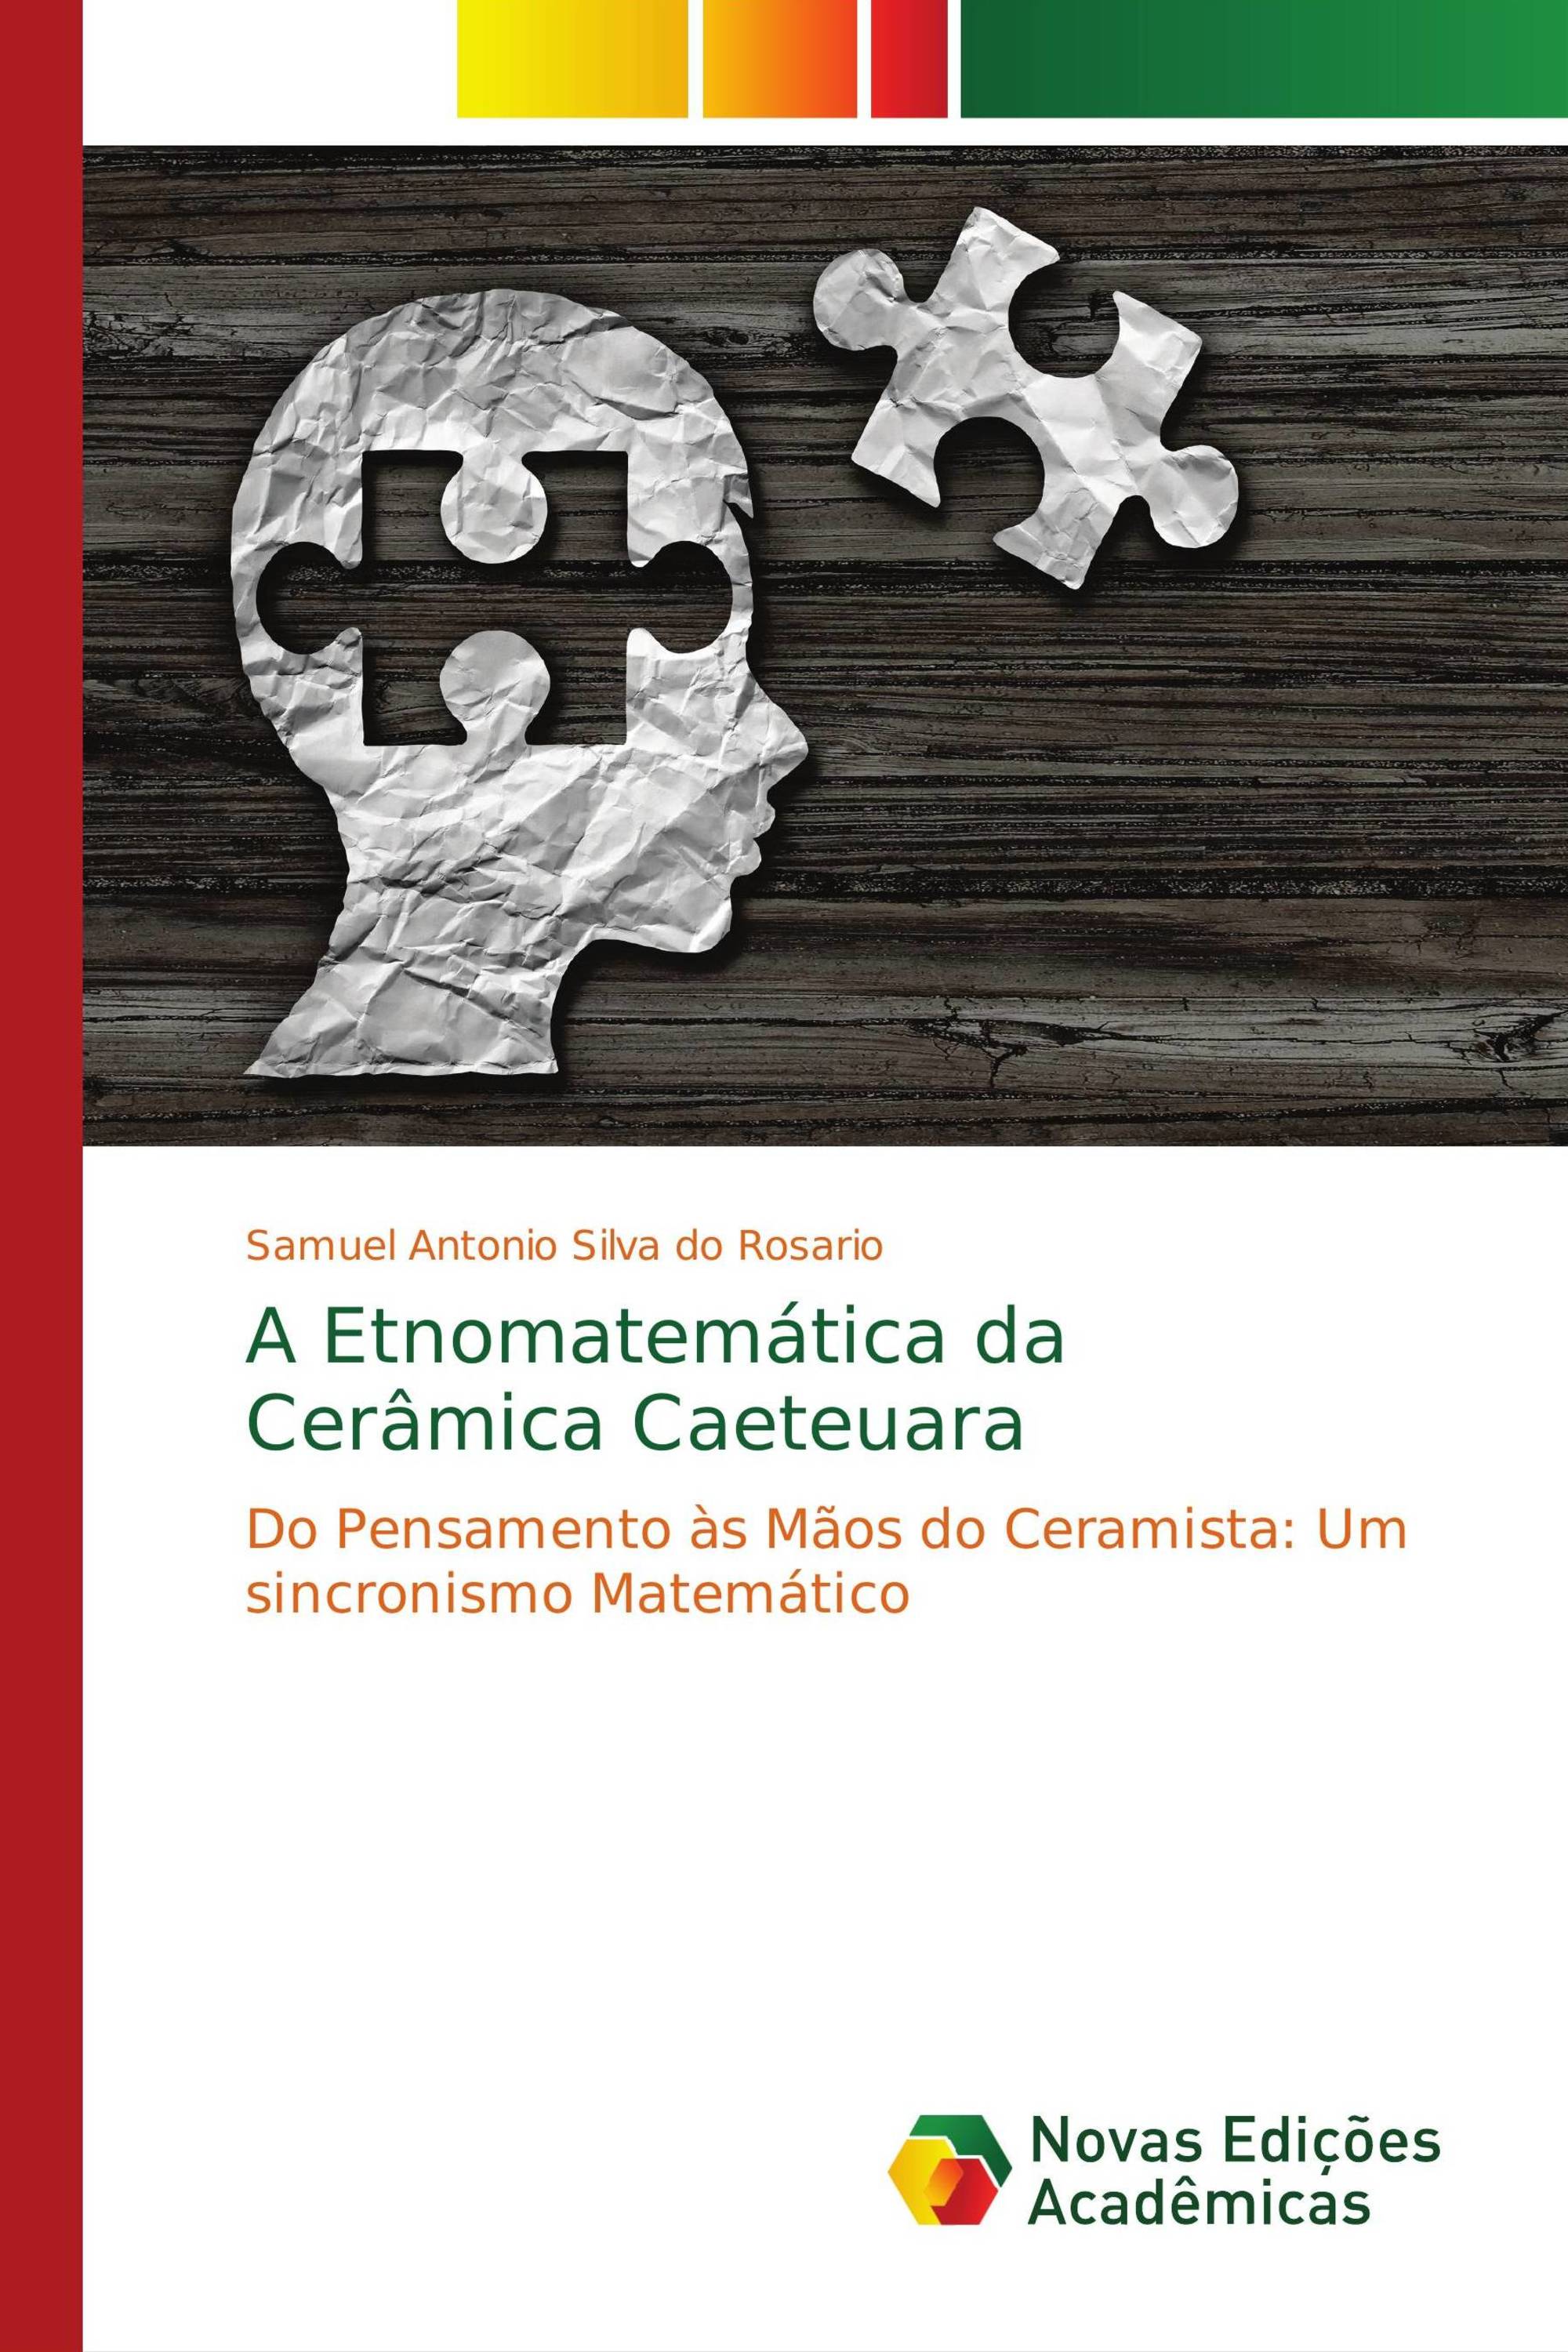 matemático e o pensamento.pdf